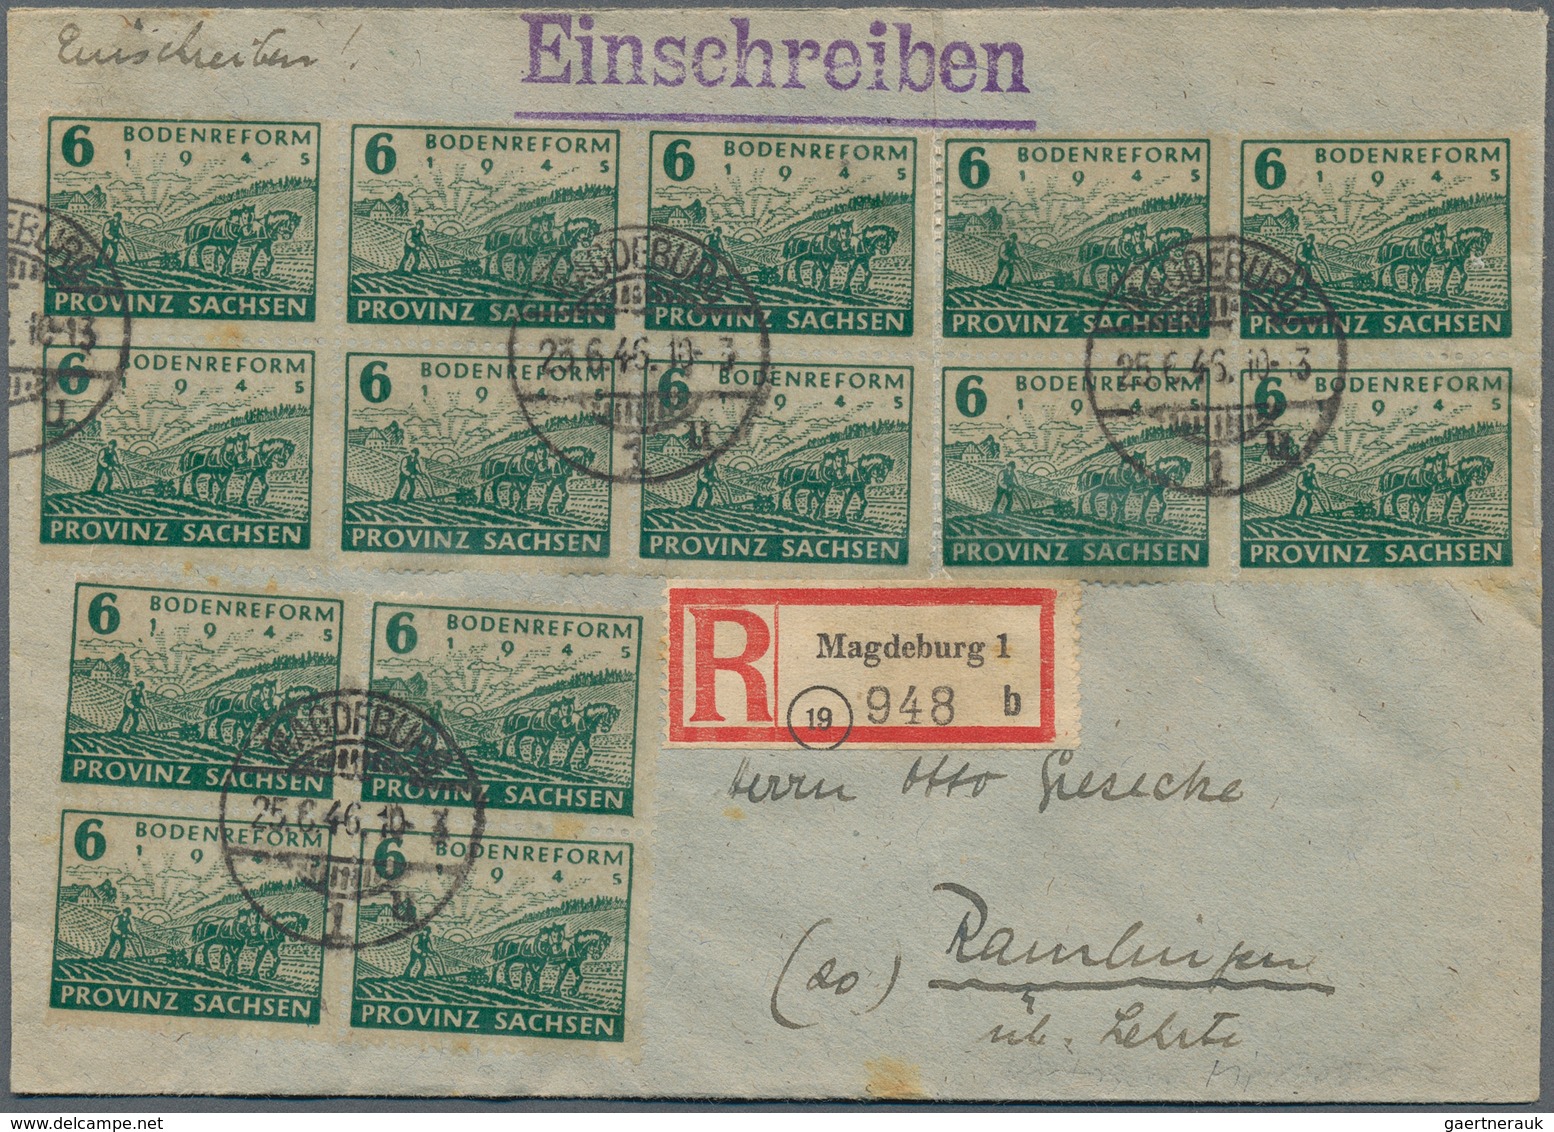 32234 Sowjetische Zone: 1945/1949, Sammlung von ca. 80 Briefen und Karten, meist philatelistische Post/Son